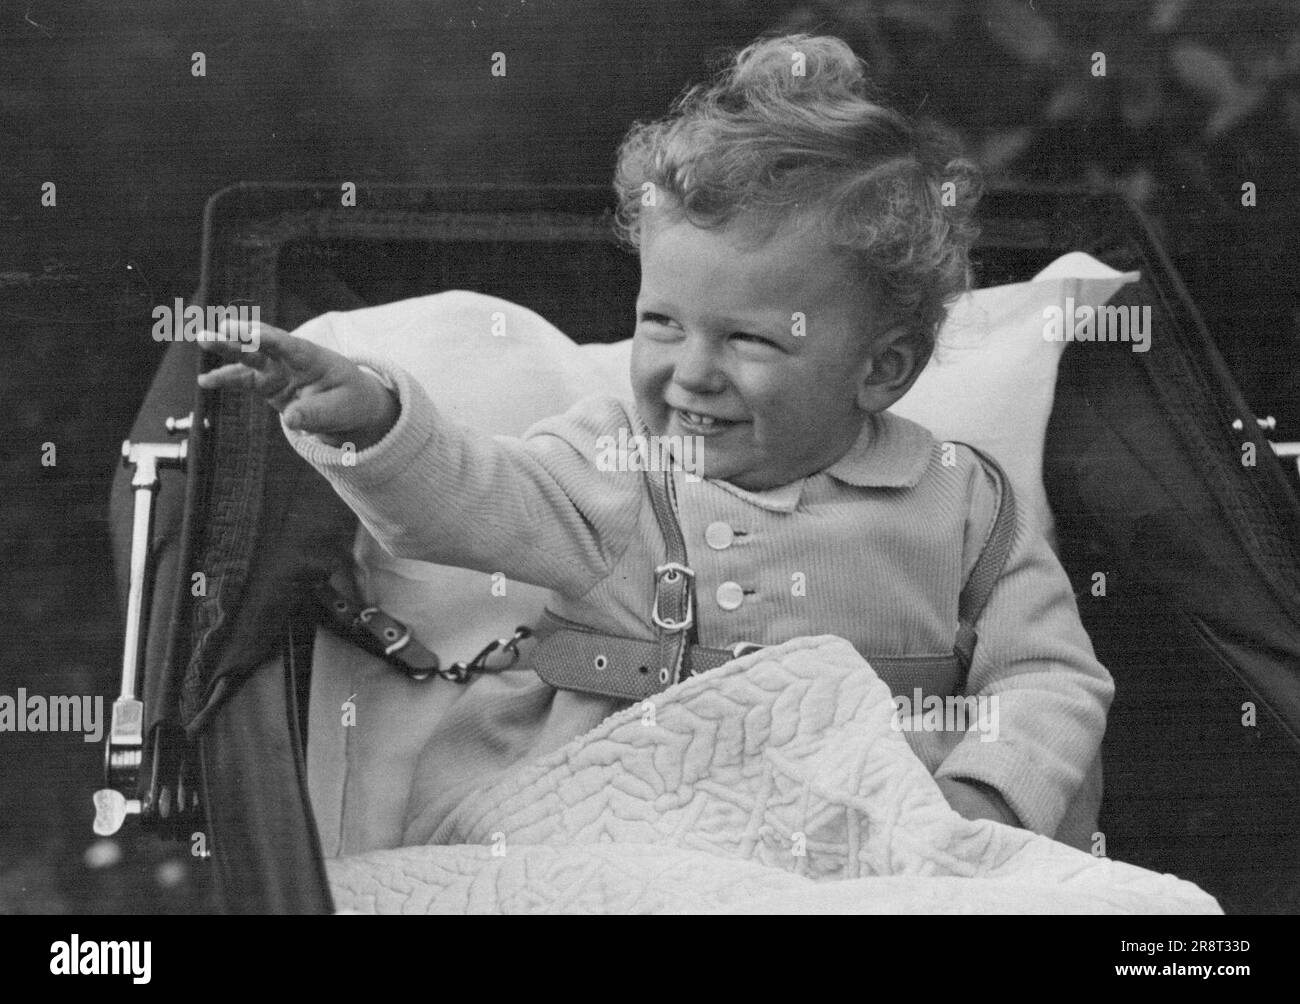 Das neueste Bild von Prinz Edward - Prinz Edward, dem einjährigen Sohn des Herzogs und der Herzogin von Kent, fotografiert auf dem Gelände ihres Hauses am Belgrave Square. 4. Januar 1937. Stockfoto